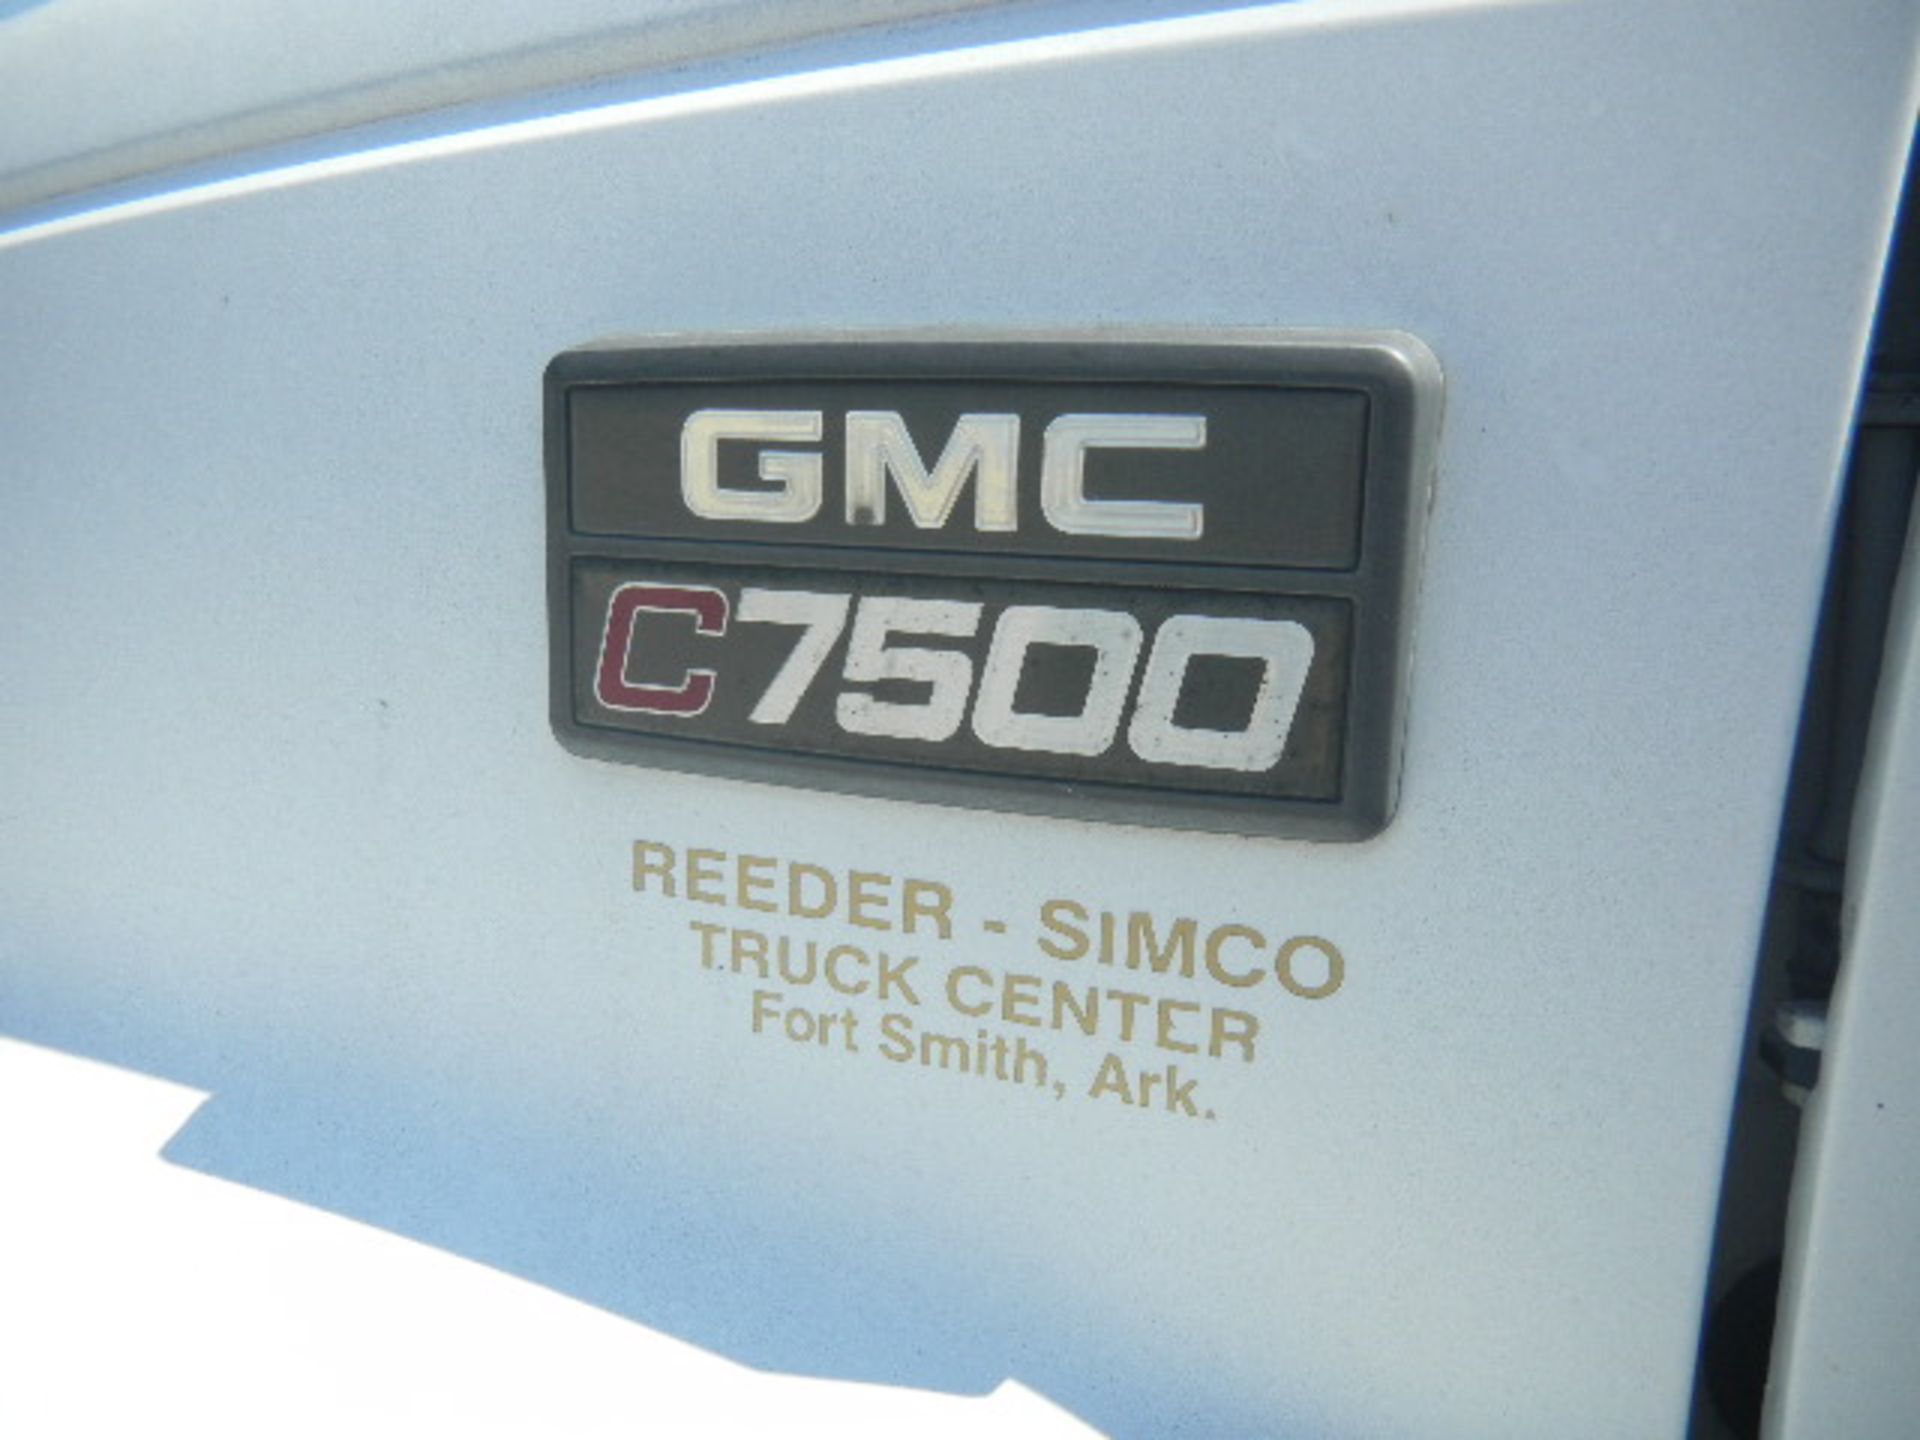 2000 GMC C7500 White 2 Ton Dump Truck - Asset I.D. #779 - Last of Vin (J503553) - Image 4 of 8